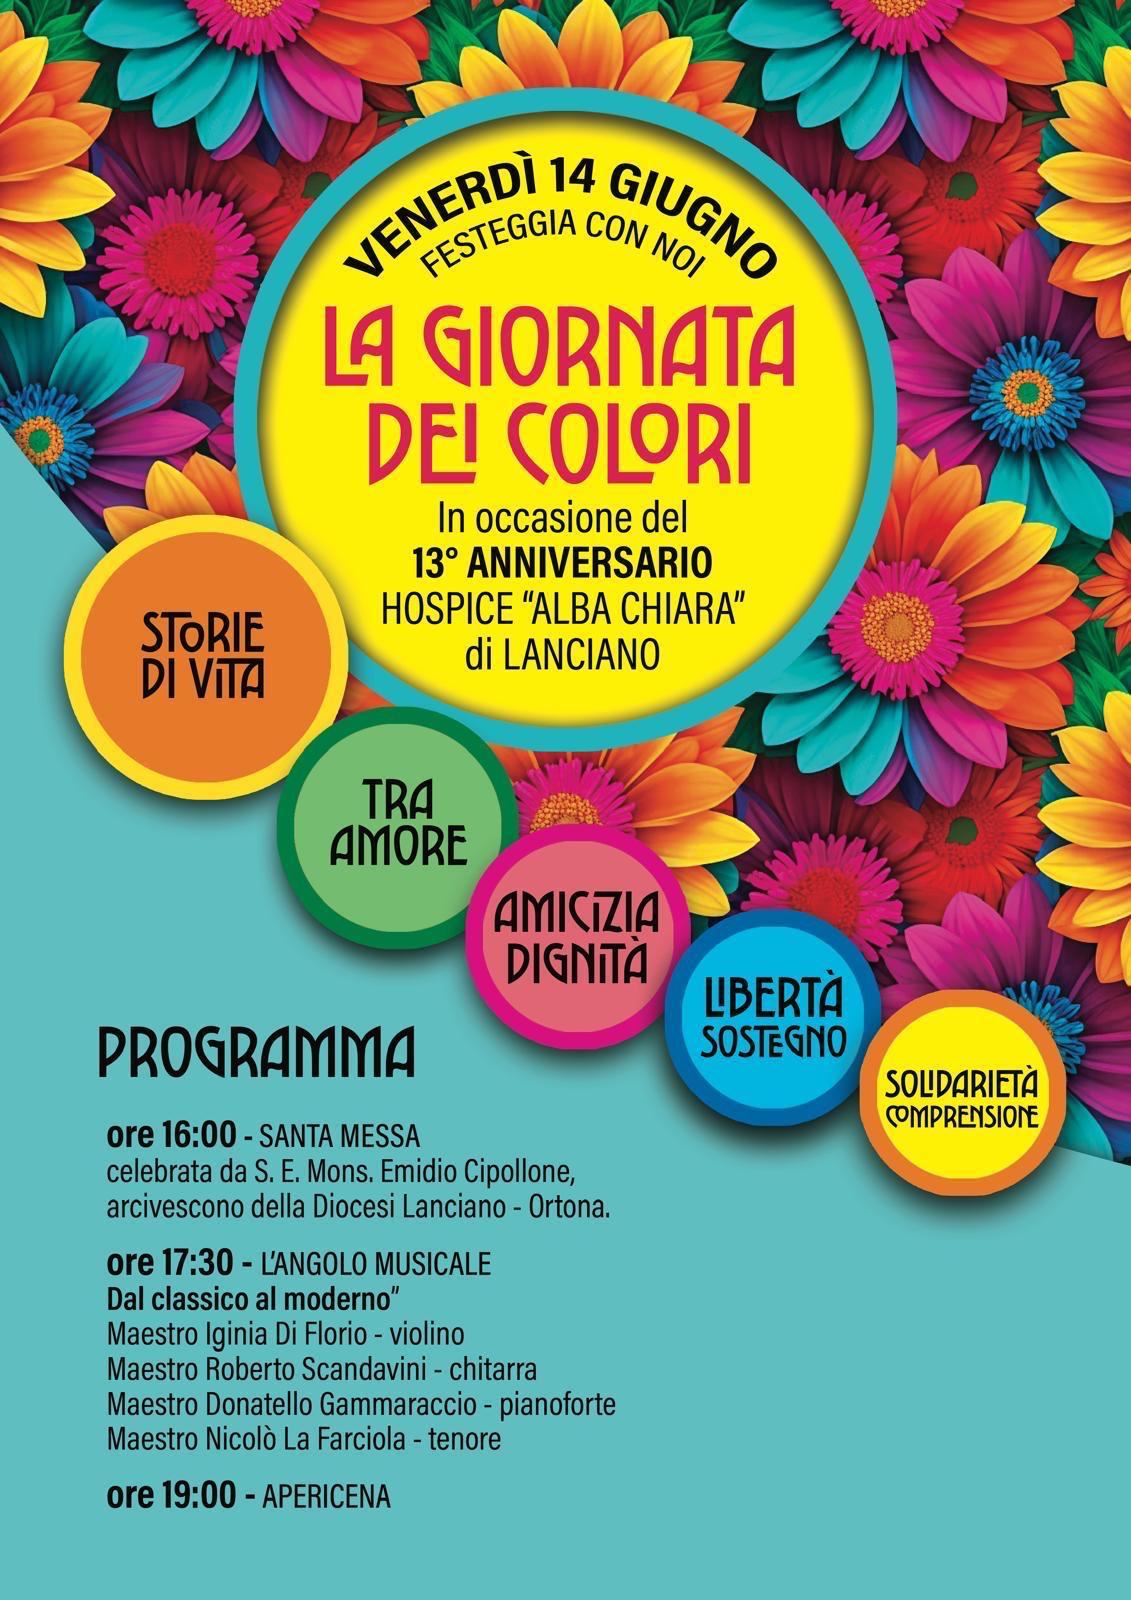 L'hospice 'Alba chiara' di Lanciano festeggia il 13° anniversario con 'La giornata dei colori'